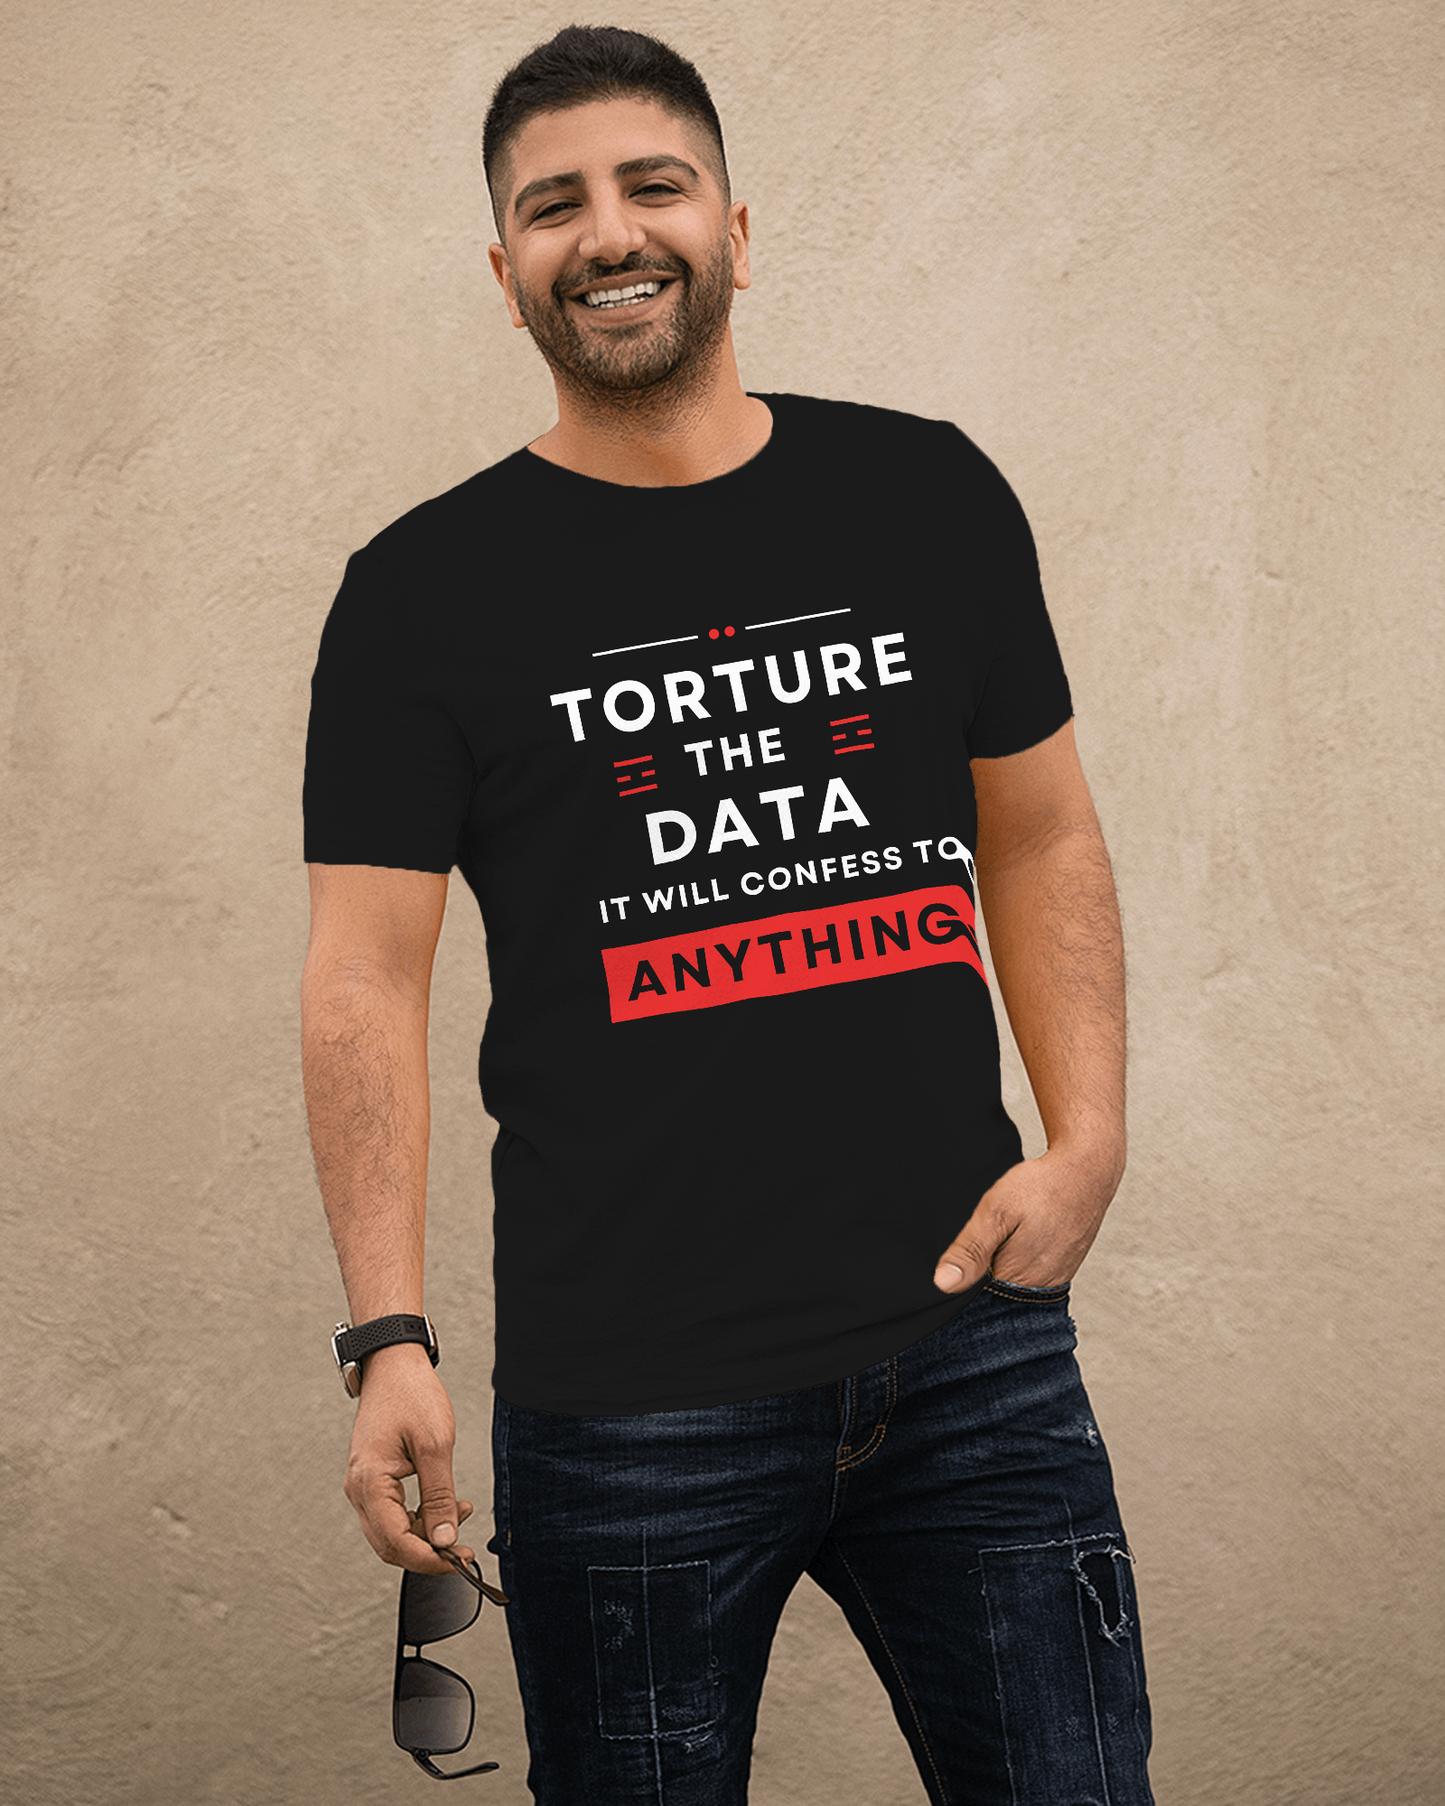 data analyst shirt for men